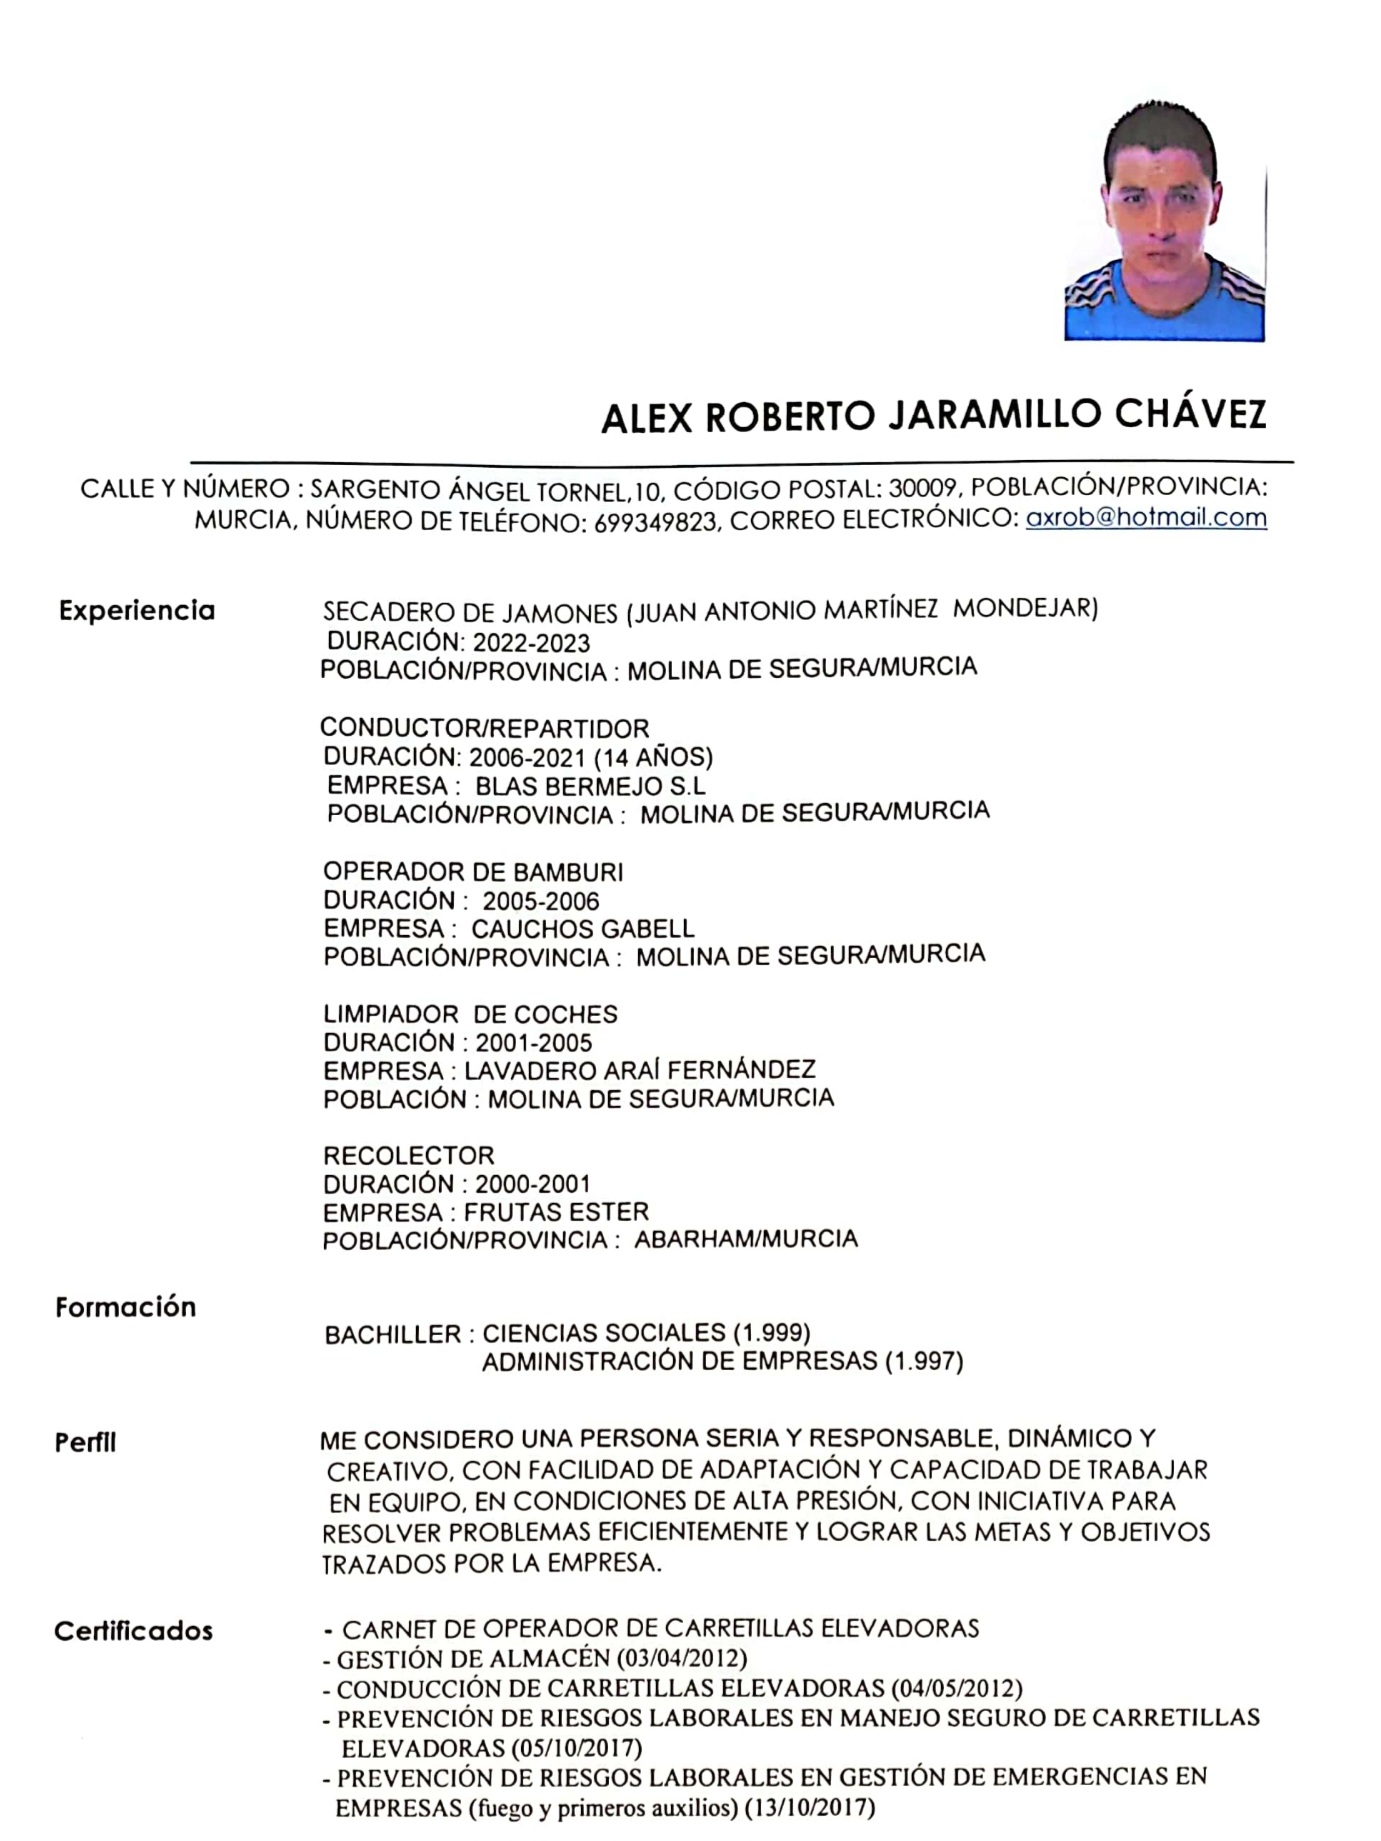 ALEX ROBERTO JARAMILLO CHAVEZ

CALLE Y NUMERO : SARGENTO ANGEL TORNEL, 10, CODIGO POSTAL: 30009, POBLACION/PROVINCIA:
MURCIA, NUMERO DE TELEFONO: 699349823, CORREO ELECTRONICO: axrob@hotmail.com

Experiencia

Formacién

Perfil

Certificados

SECADERO DE JAMONES (JUAN ANTONIO MARTINEZ MONDEJAR)
DURACION: 2022-2023
POBLACION/PROVINCIA : MOLINA DE SEGURA/MURCIA

CONDUCTOR/REPARTIDOR

DURACION: 2006-2021 (14 ANOS)

EMPRESA : BLAS BERMEJO S.L
POBLACION/PROVINCIA : MOLINA DE SEGURA/MURCIA

OPERADOR DE BAMBURI

DURACION : 2005-2006

EMPRESA : CAUCHOS GABELL
POBLACION/PROVINCIA © MOLINA DE SEGURA/MURCIA

LIMPIADOR DE COCHES

DURACION : 2001-2005

EMPRESA : LAVADERO ARAI FERNANDEZ
POBLACION : MOLINA DE SEGURA/MURCIA

RECOLECTOR
DURACION : 2000-2001

EMPRESA : FRUTAS ESTER
POBLACION/PROVINCIA : ABARHAM/MURCIA

BACHILLER : CIENCIAS SOCIALES (1.999)
ADMINISTRACION DE EMPRESAS (1.997)

ME CONSIDERO UNA PERSONA SERIA Y RESPONSABLE, DINAMICO Y
CREATIVO, CON FACILIDAD DE ADAPTACION Y CAPACIDAD DE TRABAJAR
EN EQUIPO, EN CONDICIONES DE ALTA PRESION, CON INICIATIVA PARA
RESOLVER PROBLEMAS EFICIENTEMENTE Y LOGRAR LAS METAS Y OBJETIVOS
TRAZADOS POR LA EMPRESA.

- CARNET DE OPERADOR DE CARRETILLAS ELEVADORAS

- GESTION DE ALMACEN (03/04/2012)

- CONDUCCION DE CARRETILLAS ELEVADORAS (04/05/2012)

- PREVENCION DE RIESGOS LABORALES EN MANEJO SEGURO DE CARRETILLAS
ELEVADORAS (05/10/2017)

- PREVENCION DE RIESGOS LABORALES EN GESTION DE EMERGENCIAS EN
EMPRESAS (fuego y primeros auxilios) (13/10/2017)